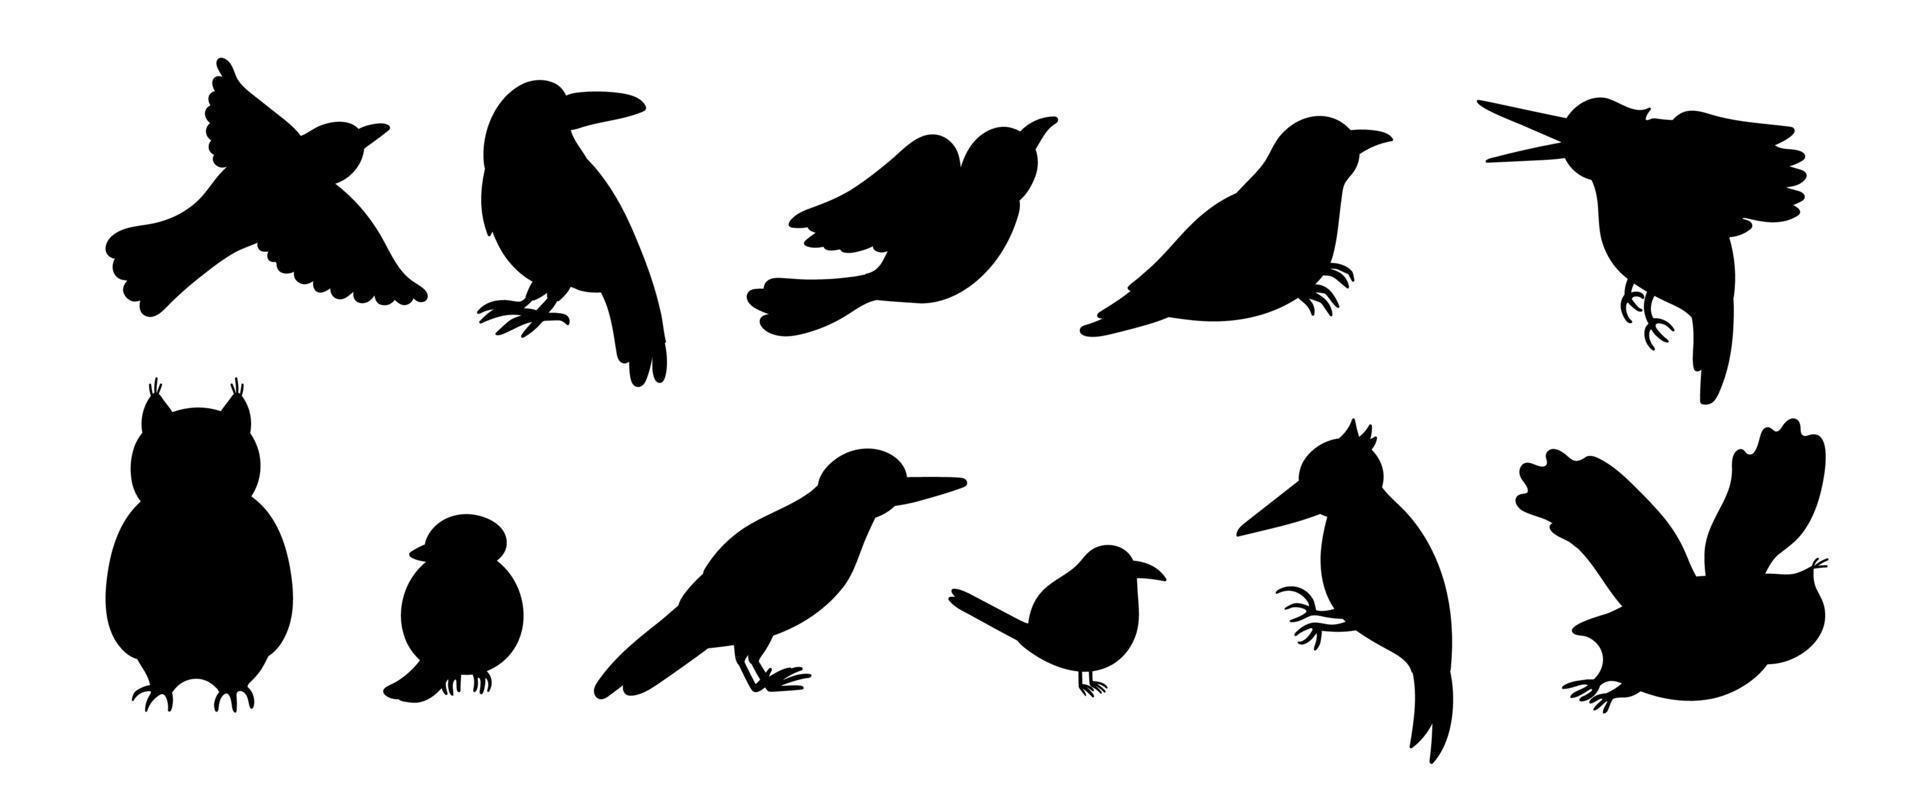 conjunto de vetores de desenho animado estilo mão desenhada cuco lisos engraçados, pica-paus, corujas, corvo, silhuetas de carriça. ilustração em preto e branco bonita de pássaros da floresta para design de crianças.